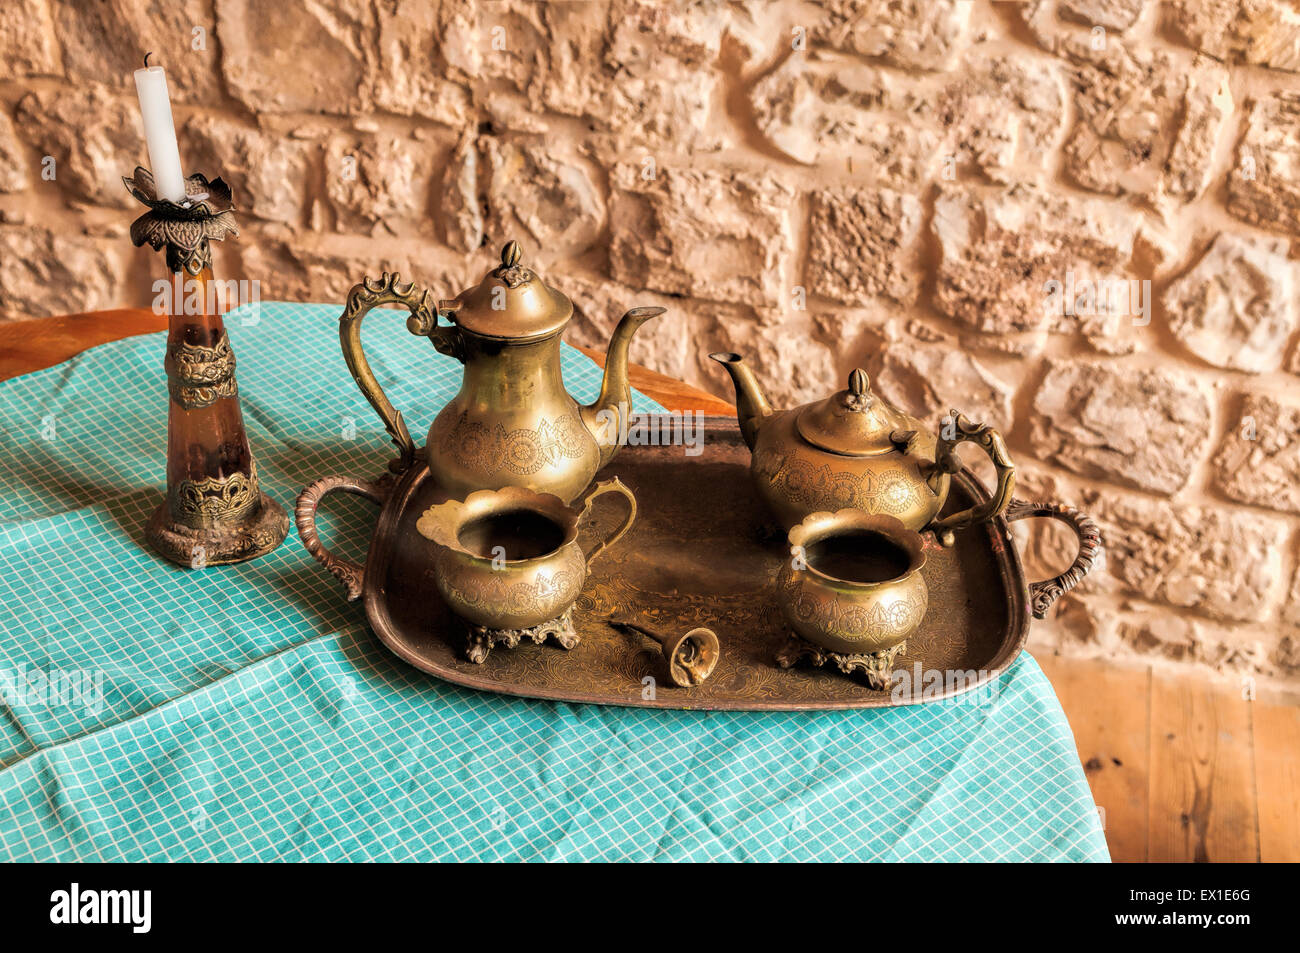 Cena de platos de café y té de la antigua campana de bronce en la bandeja con la llamada de los trabajadores Foto de stock